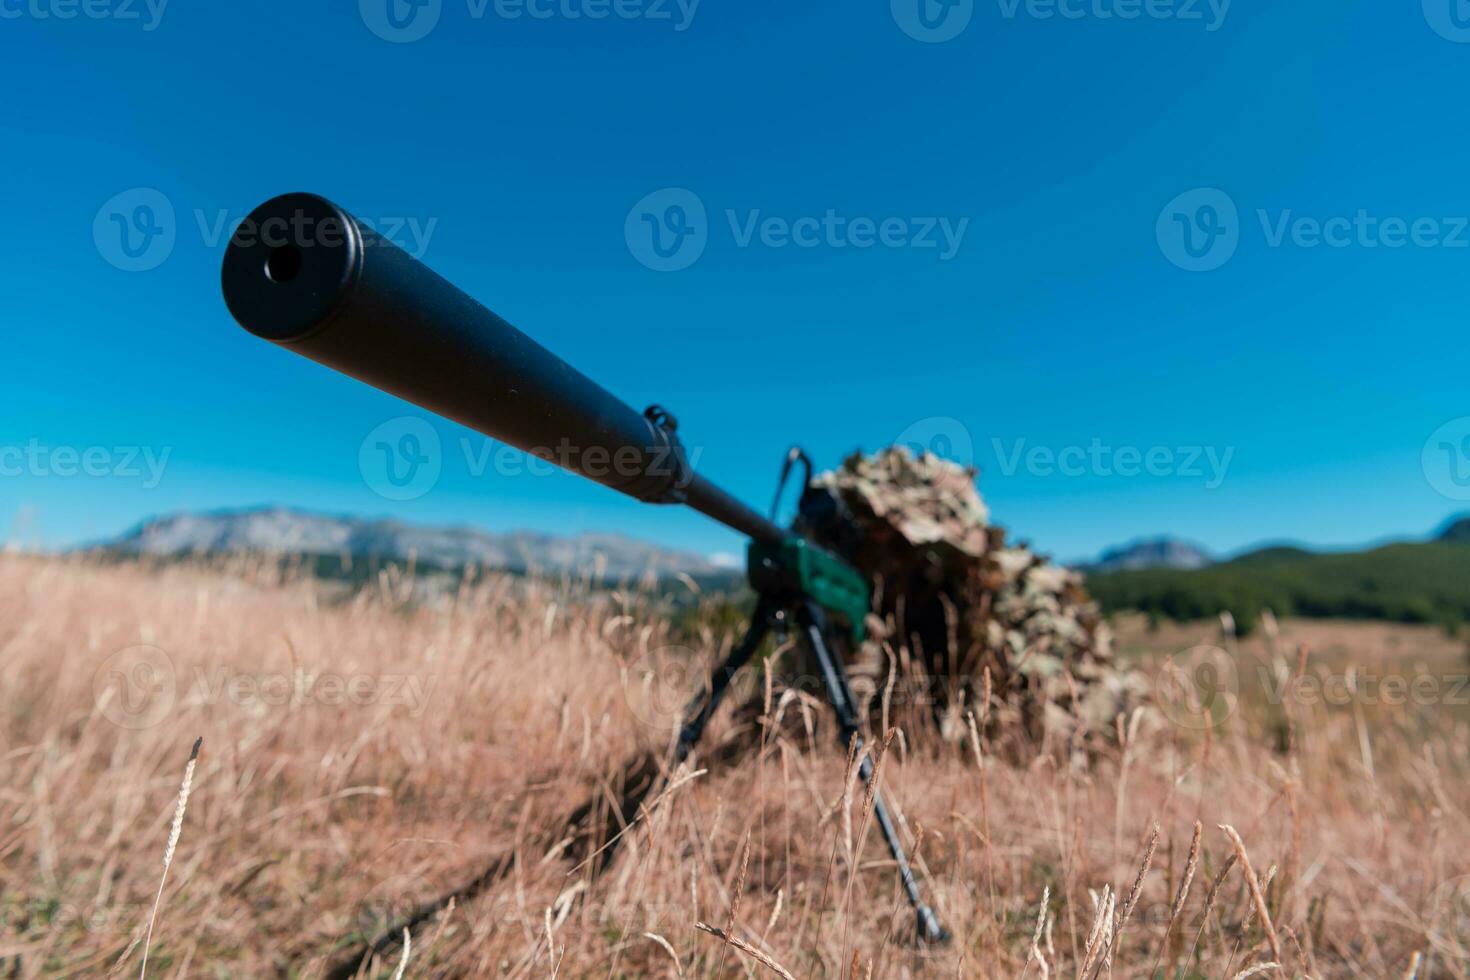 Ejército soldado participación francotirador rifle con alcance y puntería en bosque. guerra, ejército, tecnología y personas concepto foto